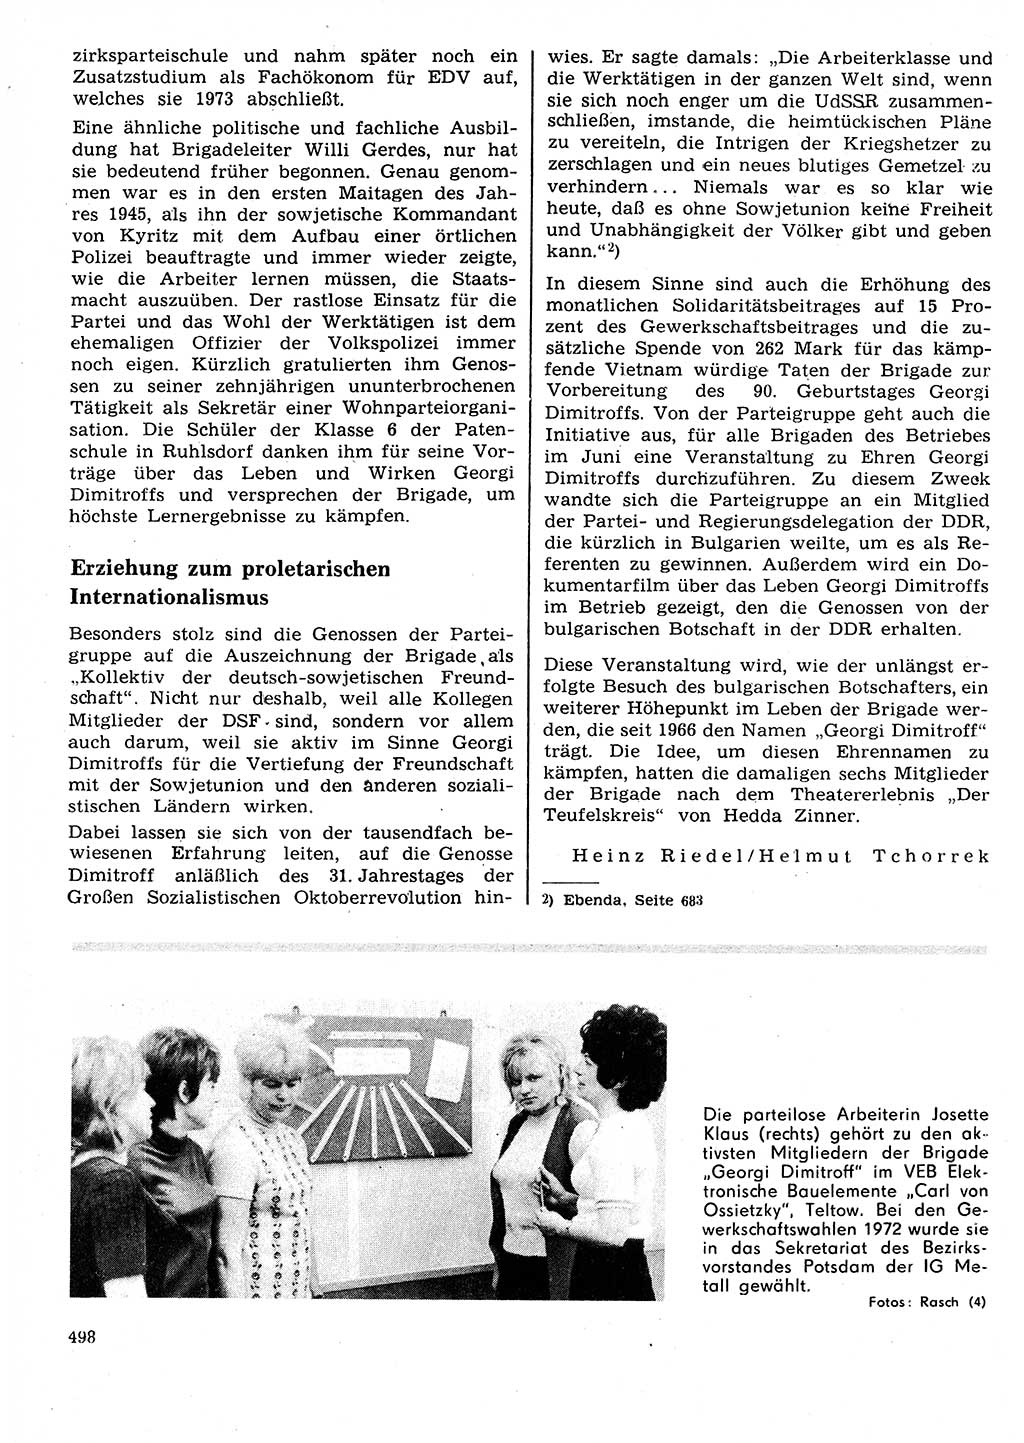 Neuer Weg (NW), Organ des Zentralkomitees (ZK) der SED (Sozialistische Einheitspartei Deutschlands) für Fragen des Parteilebens, 27. Jahrgang [Deutsche Demokratische Republik (DDR)] 1972, Seite 498 (NW ZK SED DDR 1972, S. 498)